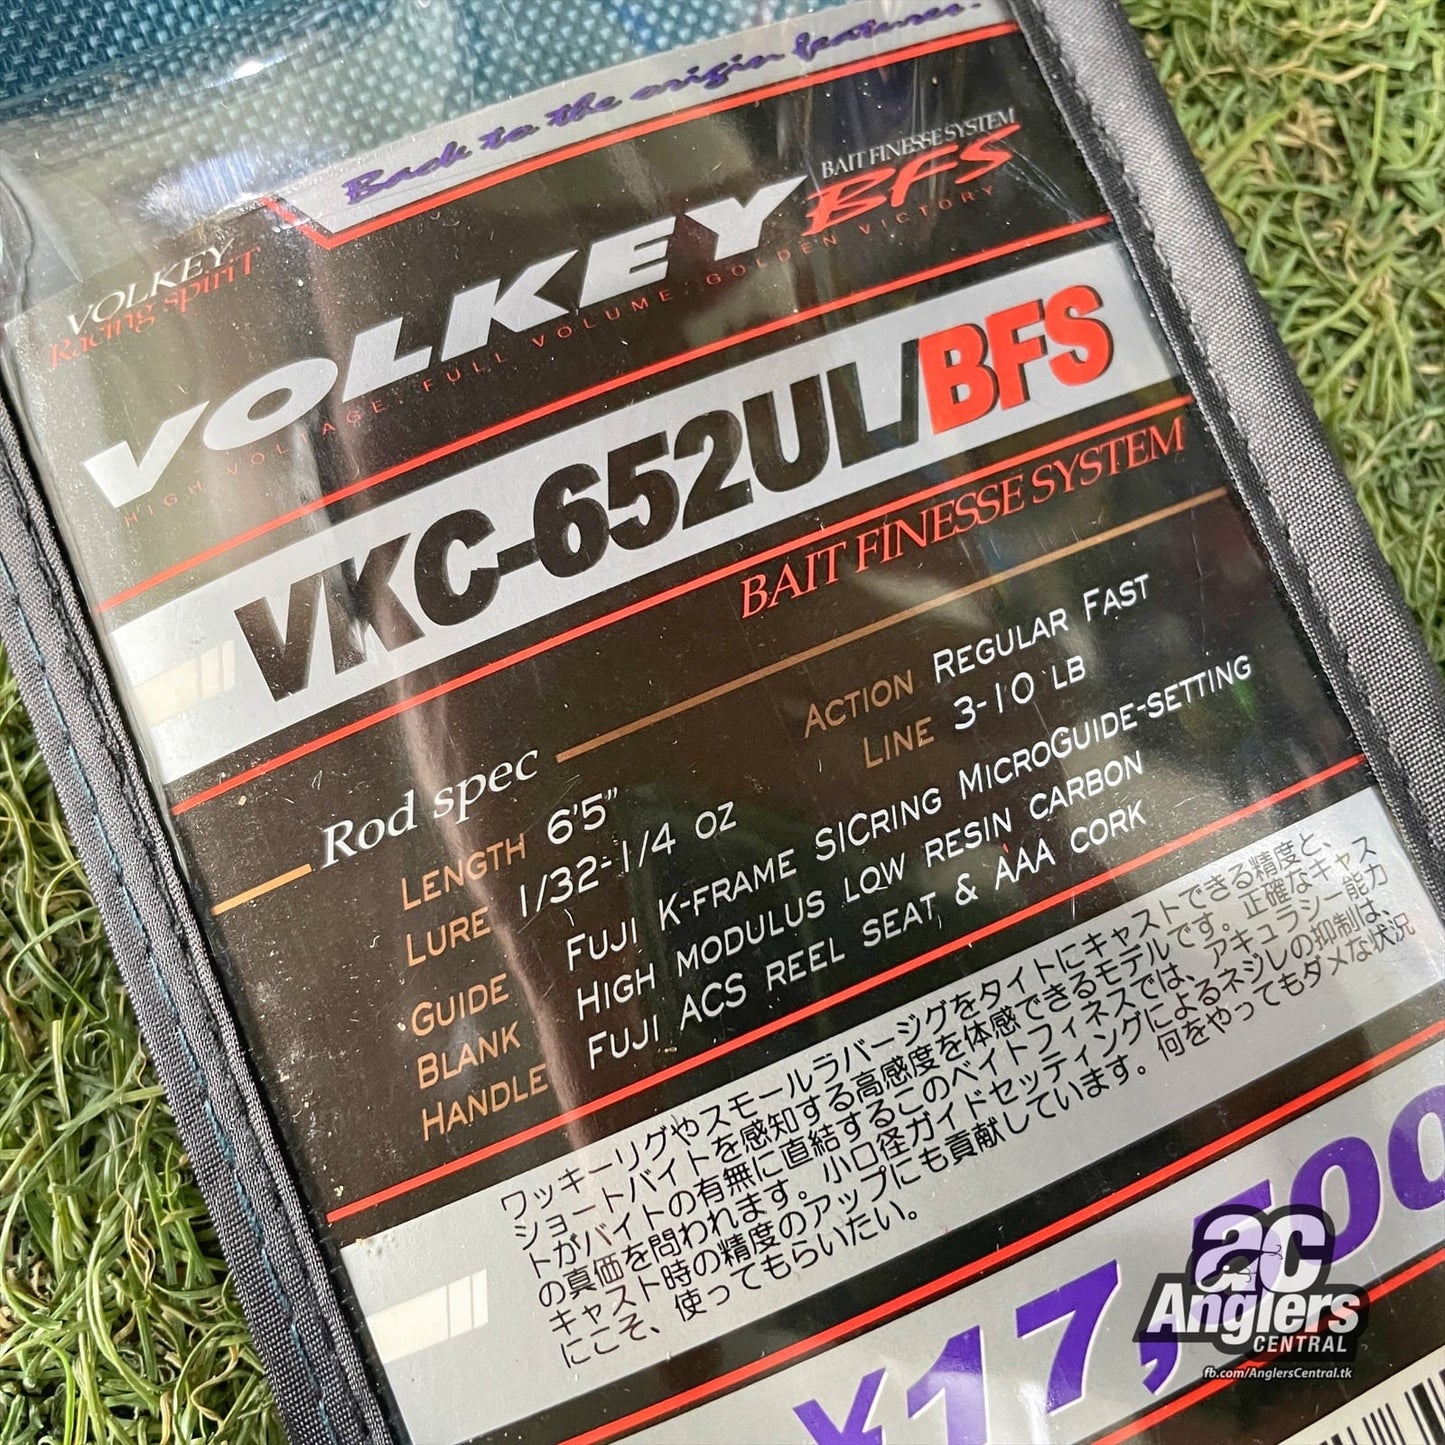 Volkey VKC-652UL/BFS 3-10lb (USED, like new)